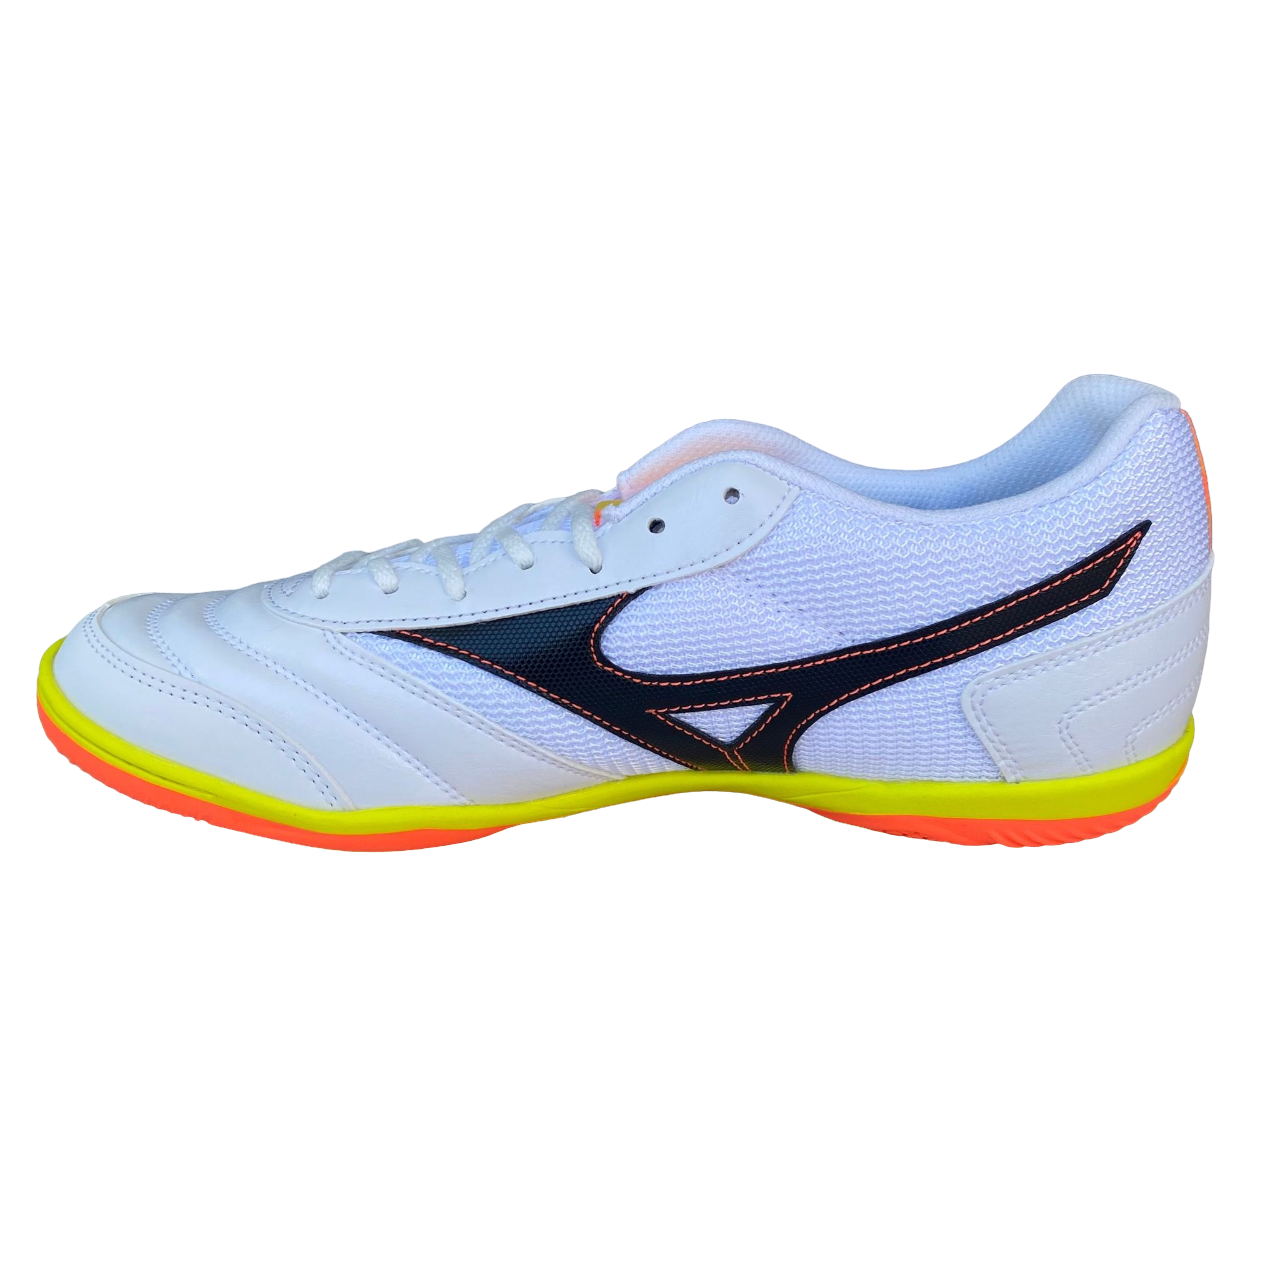 Mizuno scarpa da calcetto flessibile e traspirante Futsal MRL Sala Club Indoor bianco-giallo-arancio